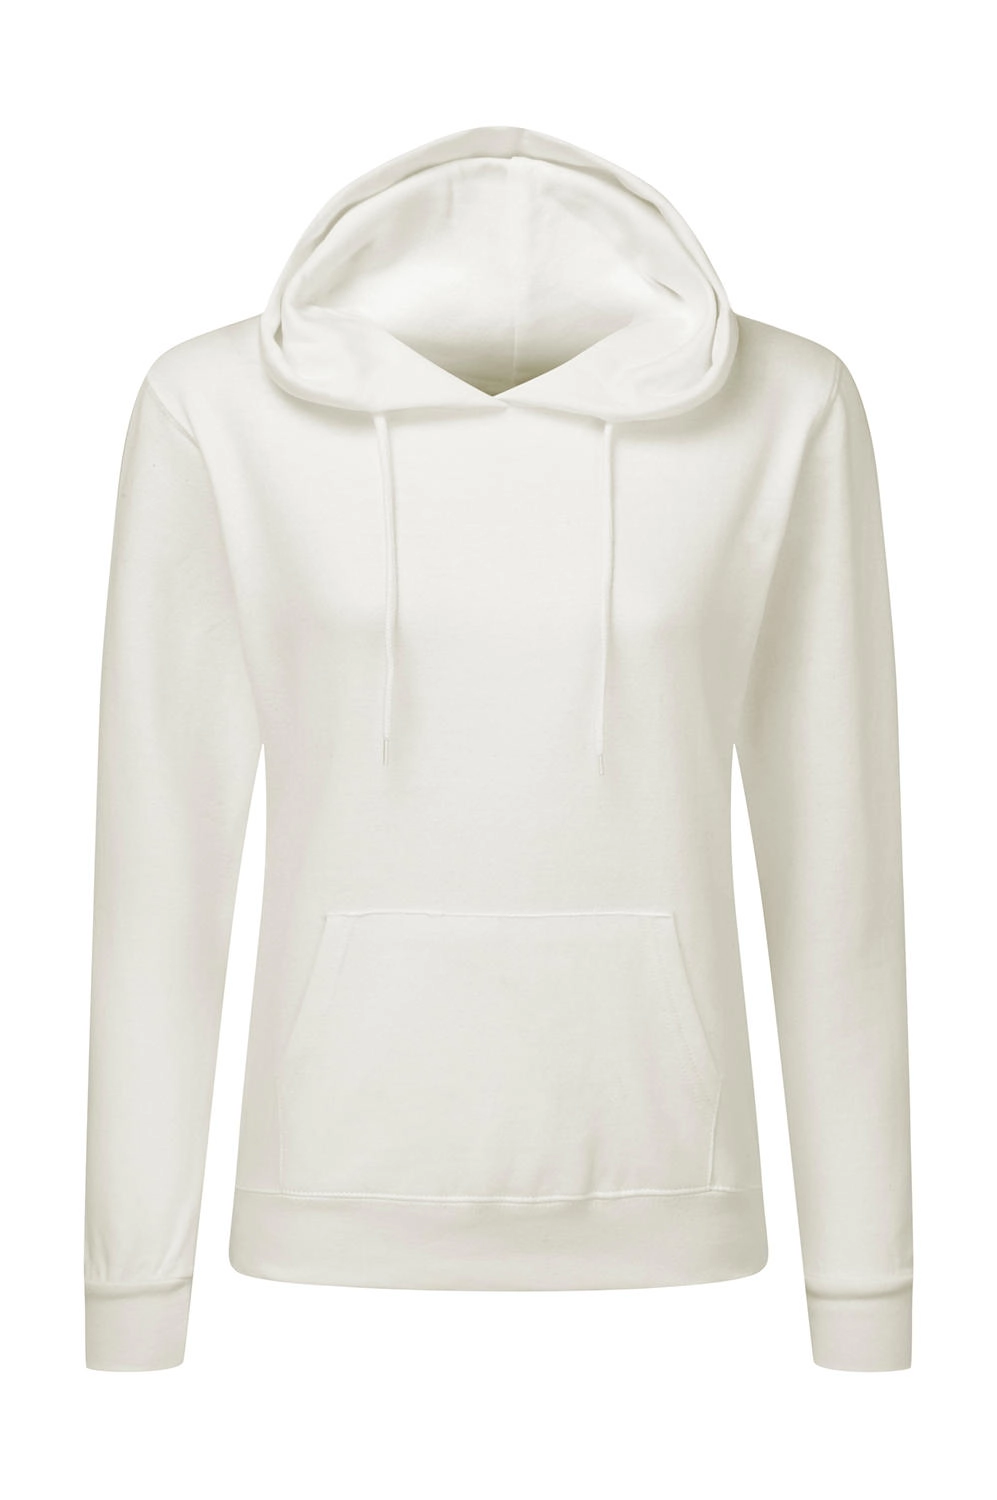 Hooded Sweatshirt Women zum Besticken und Bedrucken in der Farbe Snowwhite mit Ihren Logo, Schriftzug oder Motiv.